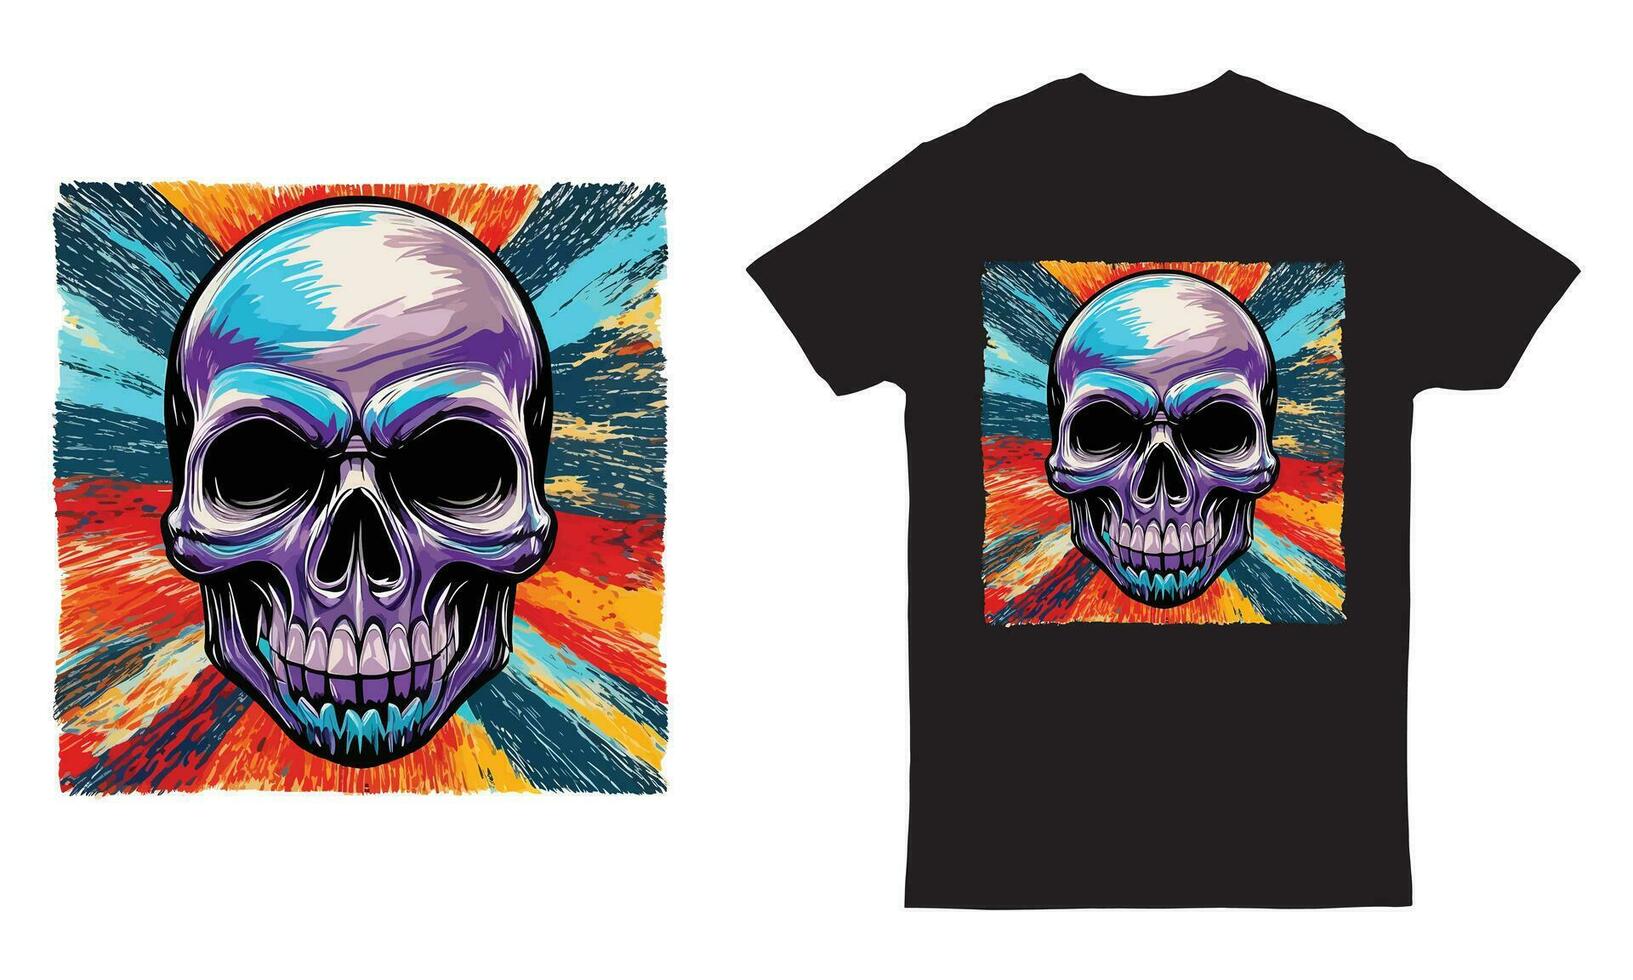 Skull summer beach t shirt graphic design vector illustration